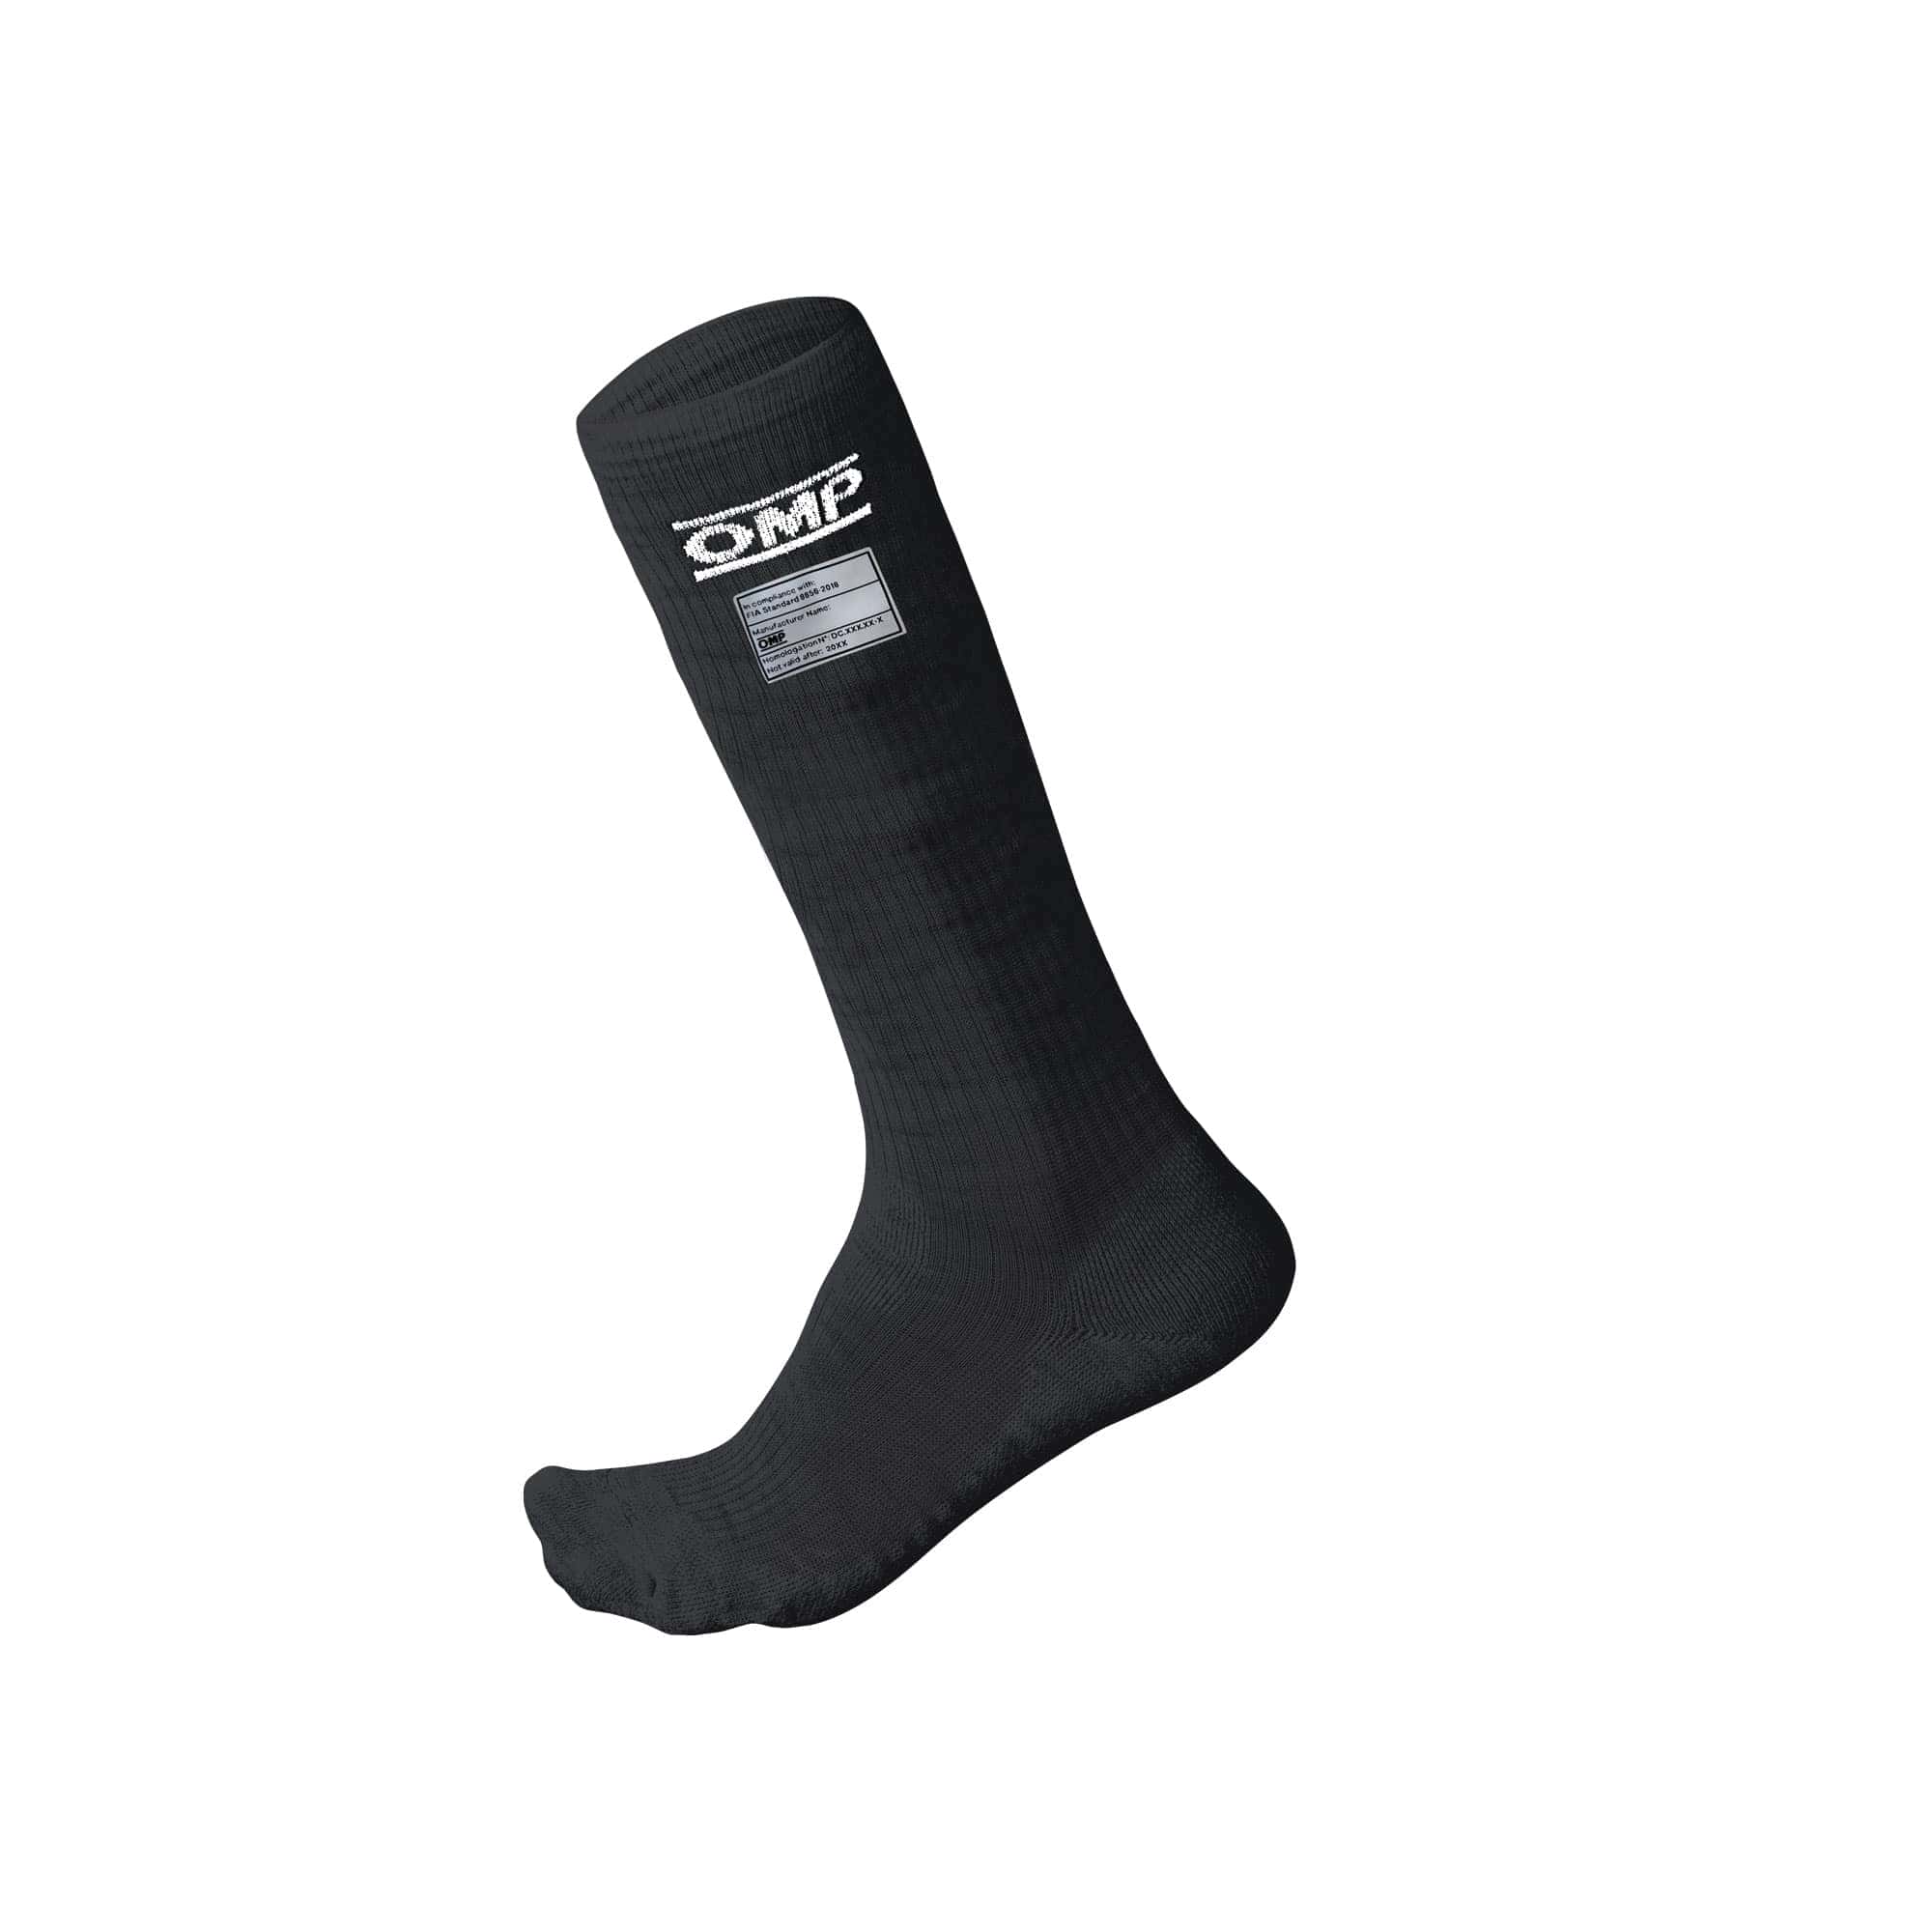 Calze-One-Socks-my2021- Fia-8856-2018-Black-IAA-766071